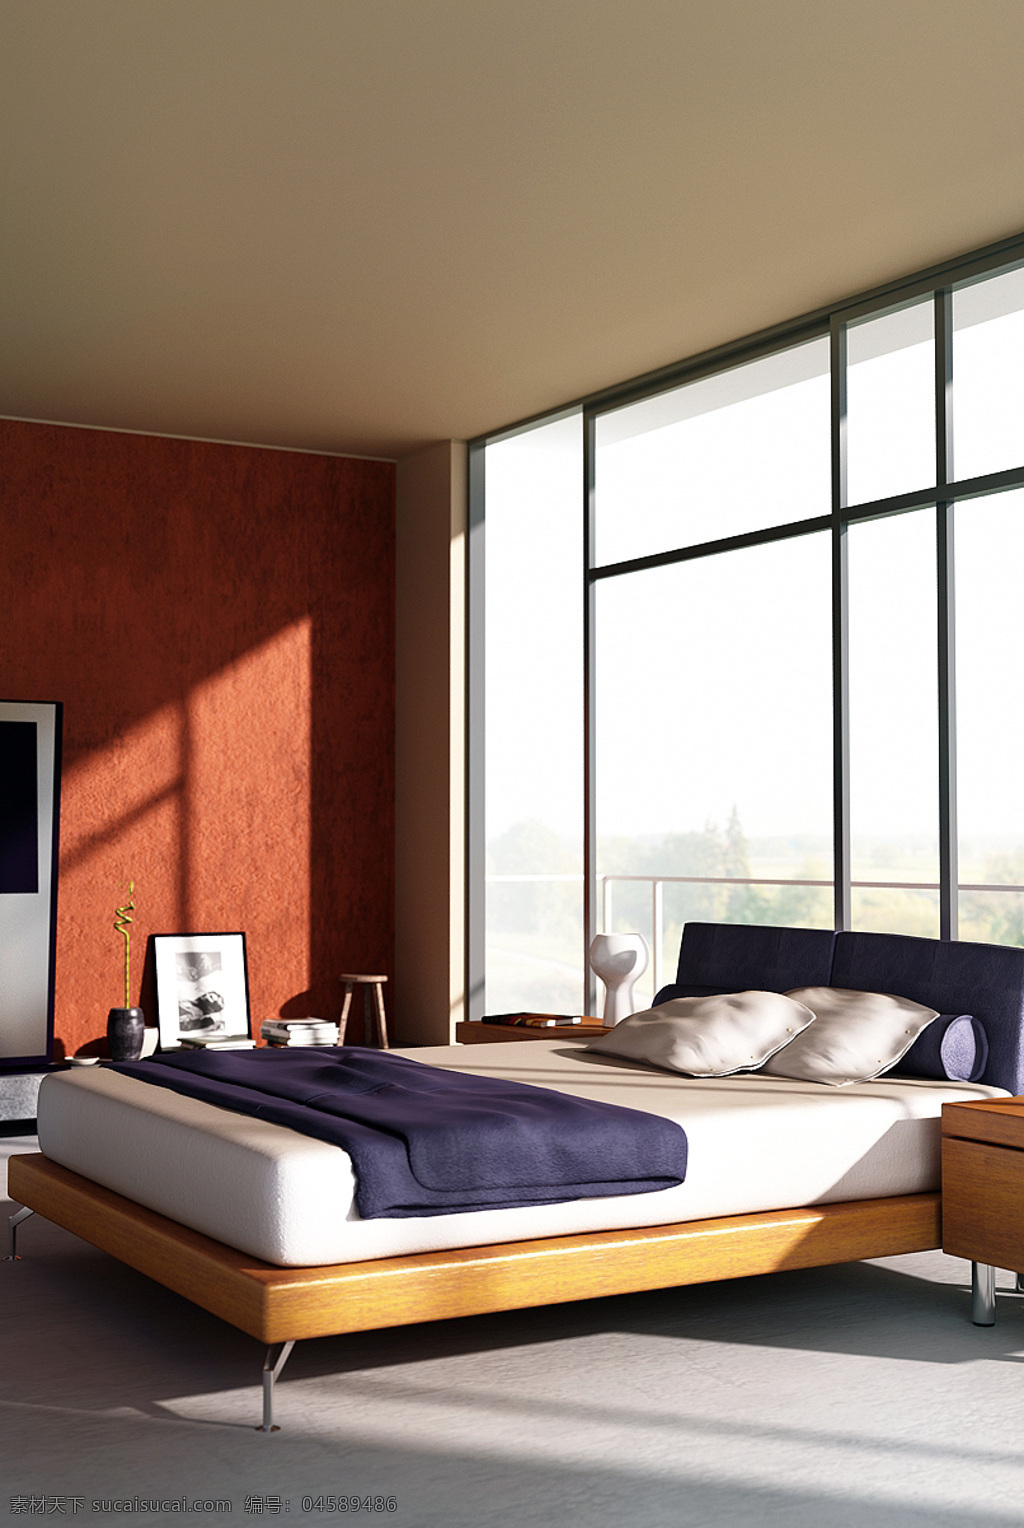 简约 风格 暖 色系 卧室 max 效果图 室内效果图 创 落地窗 地板 壁纸 max源文件 渲染图